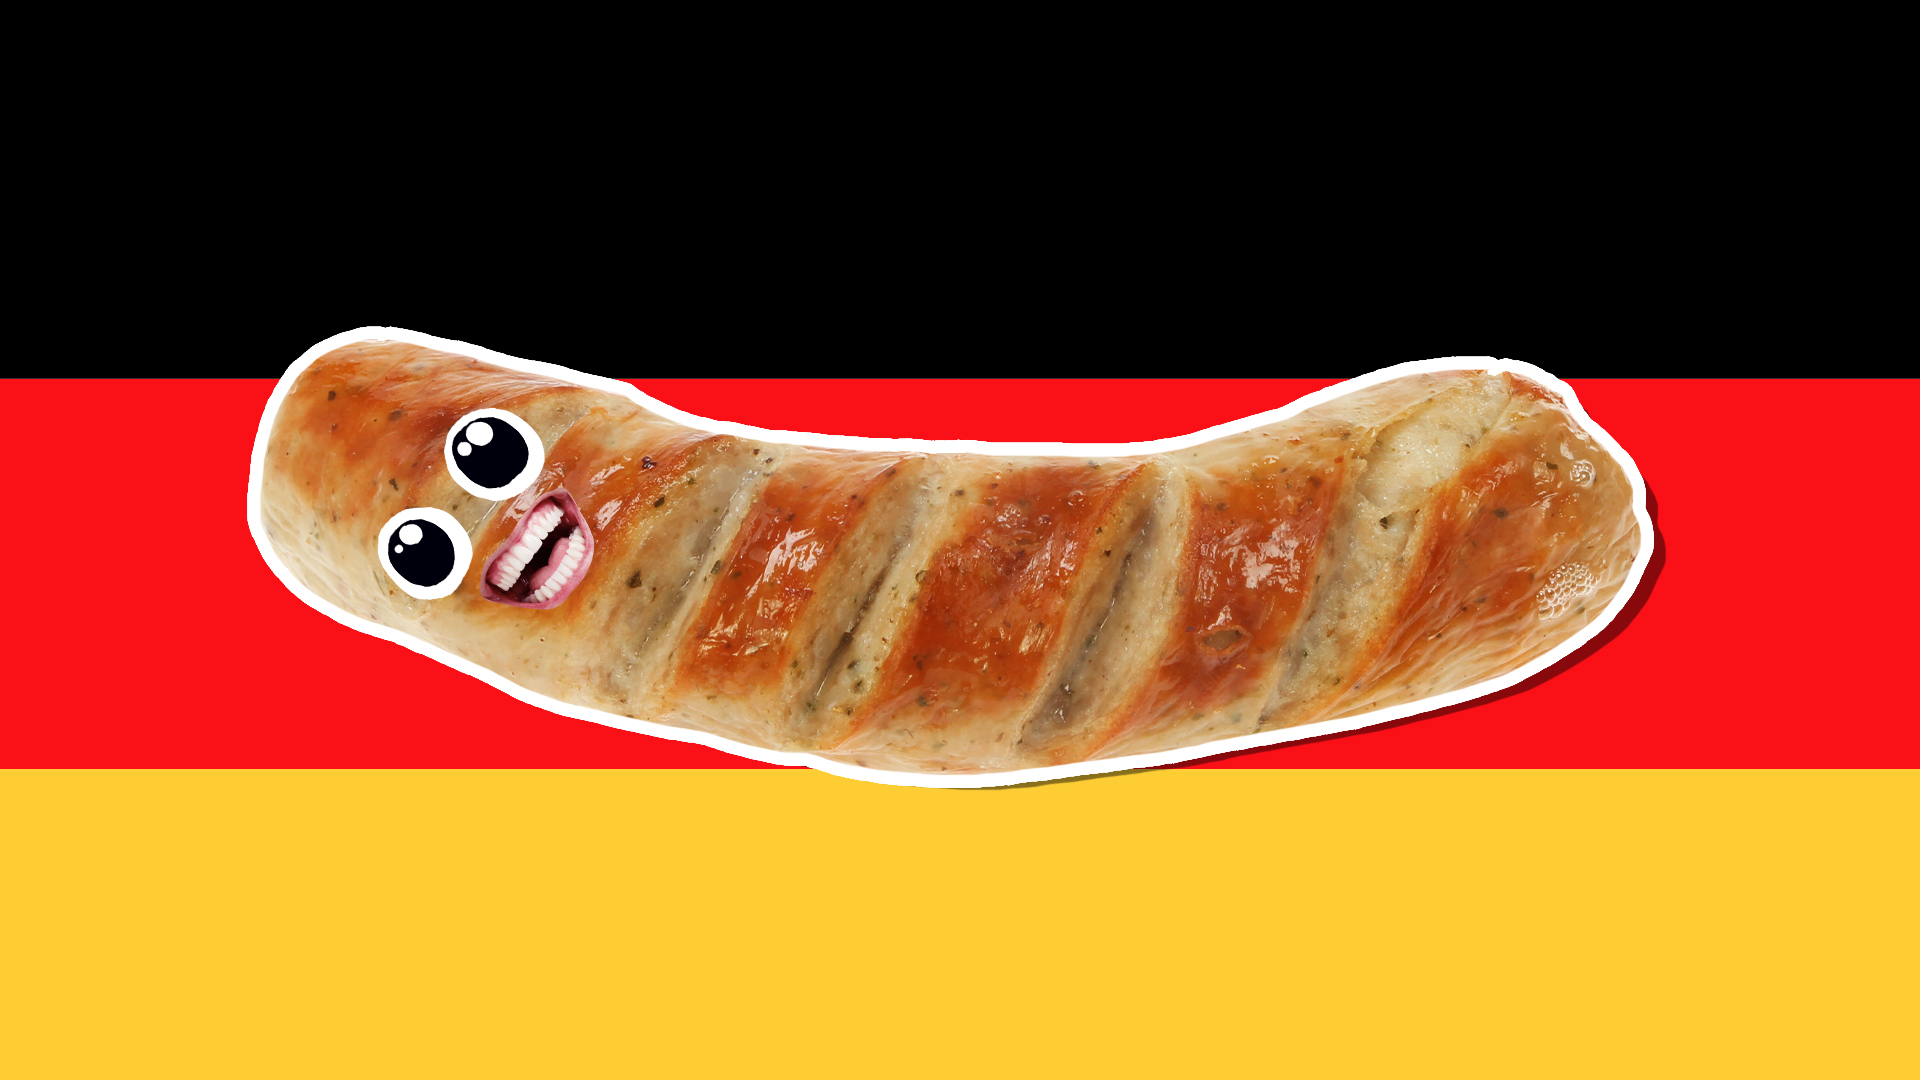 A sausage and German flag